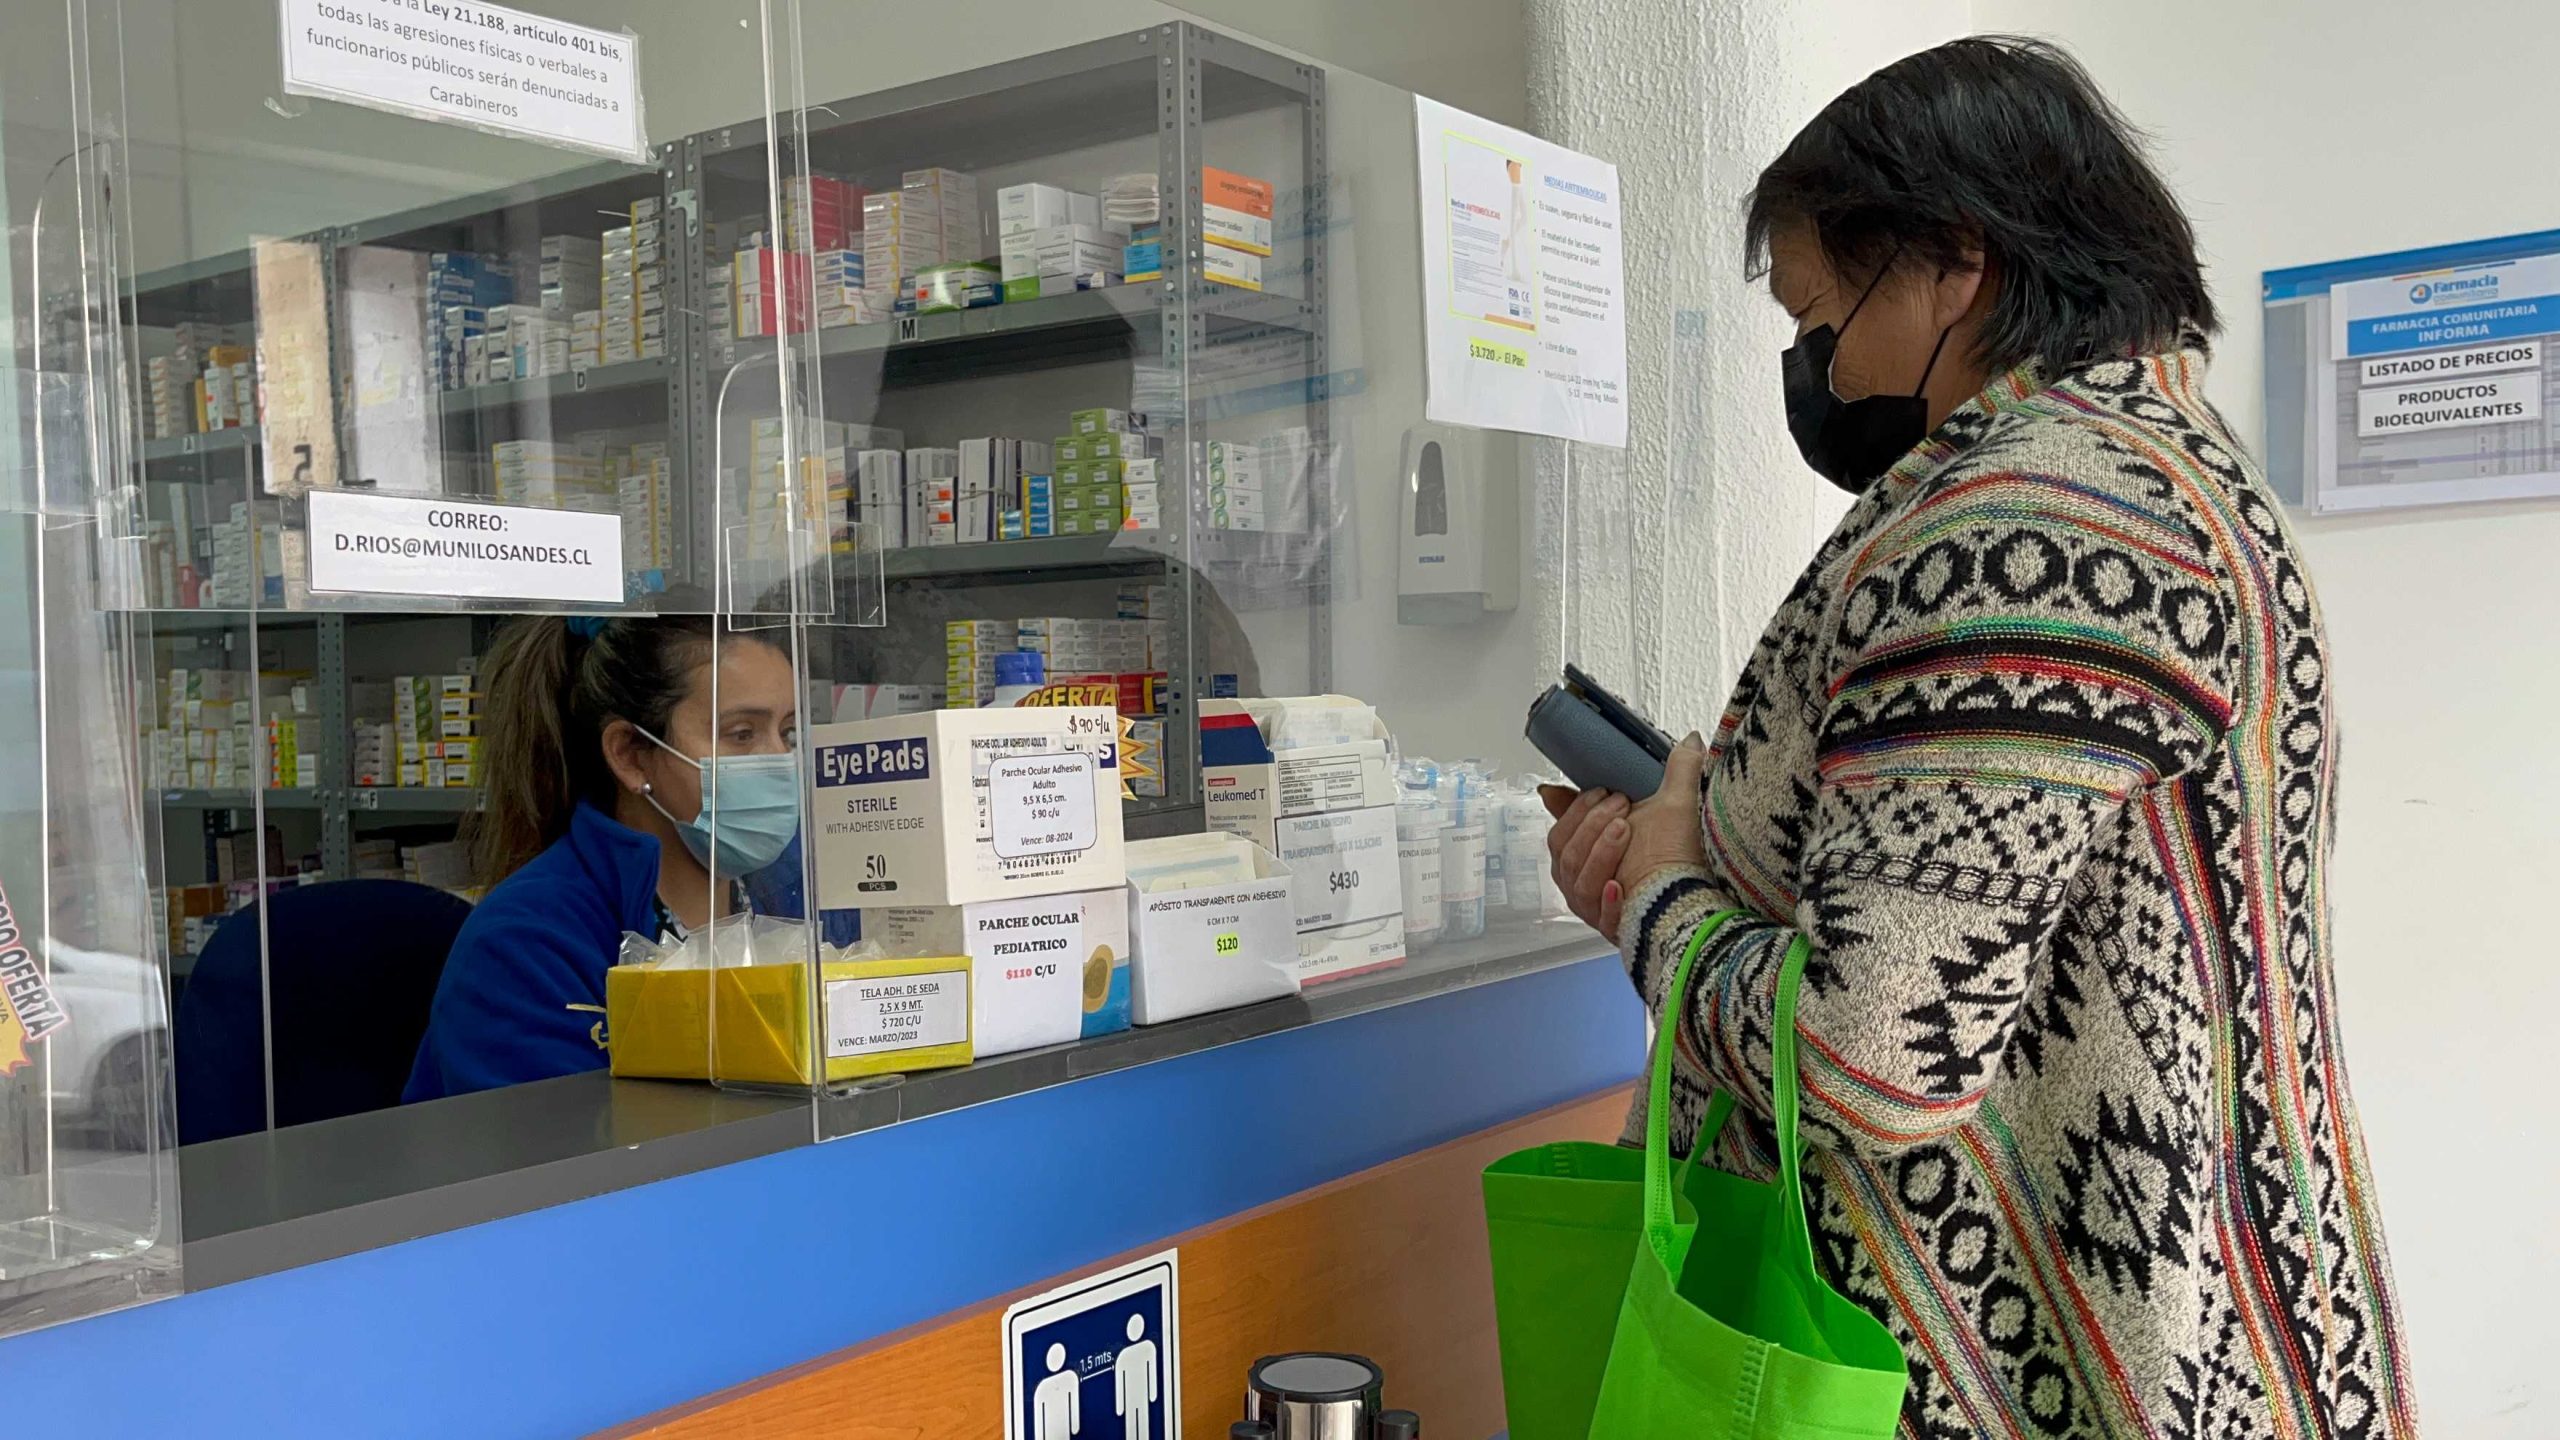 LOS ANDES: Hemoglucotest y anticonceptivos, entre los productos más requeridos en la Farmacia Comunitaria de Los Andes